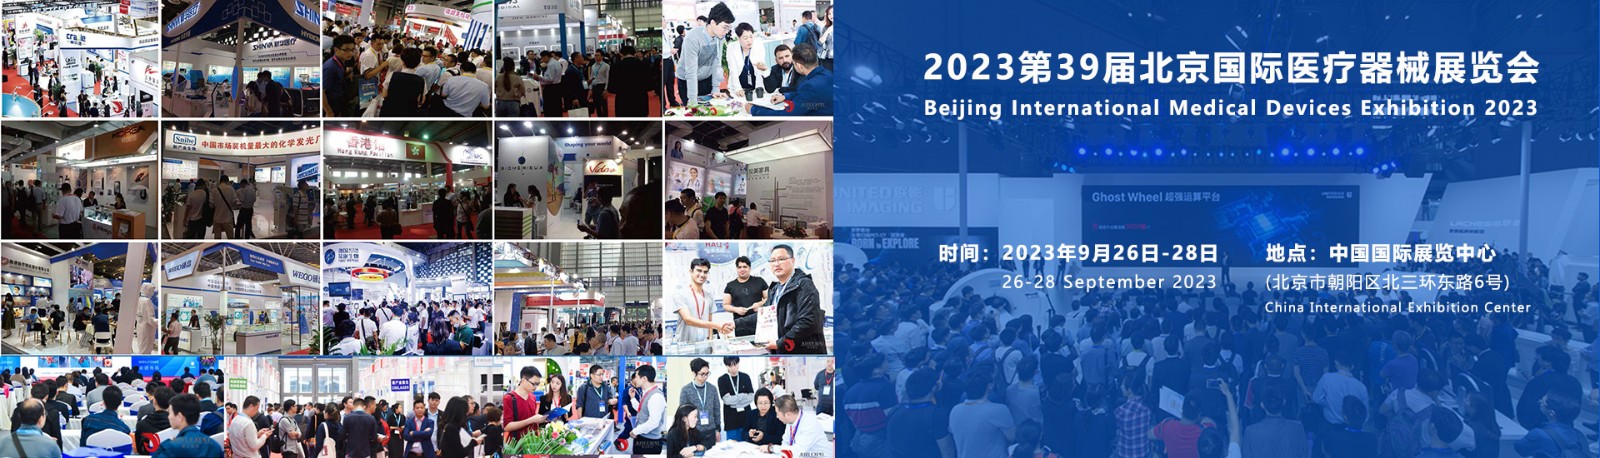 2023北京国际医疗器械展览会现已全面开始招展